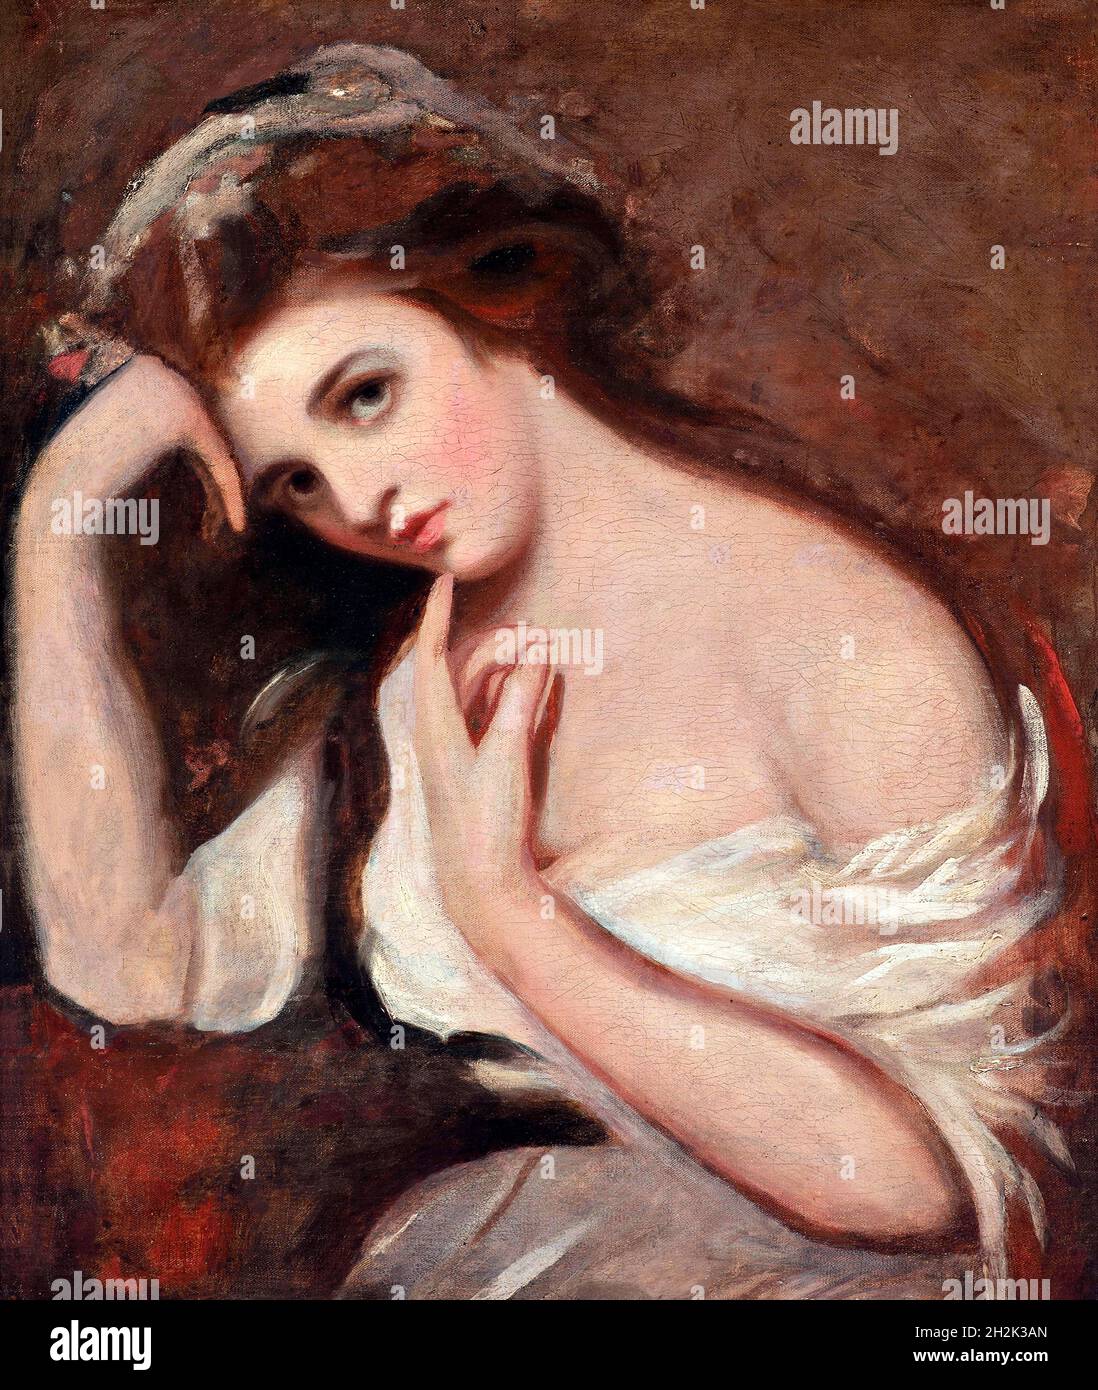 Lady Hamilton par George Romney, huile sur toile, 1783/91 .Portrait d'Emma Hamilton (1765-1815), la maîtresse de Lord Nelson et la muse de George Romney. Banque D'Images